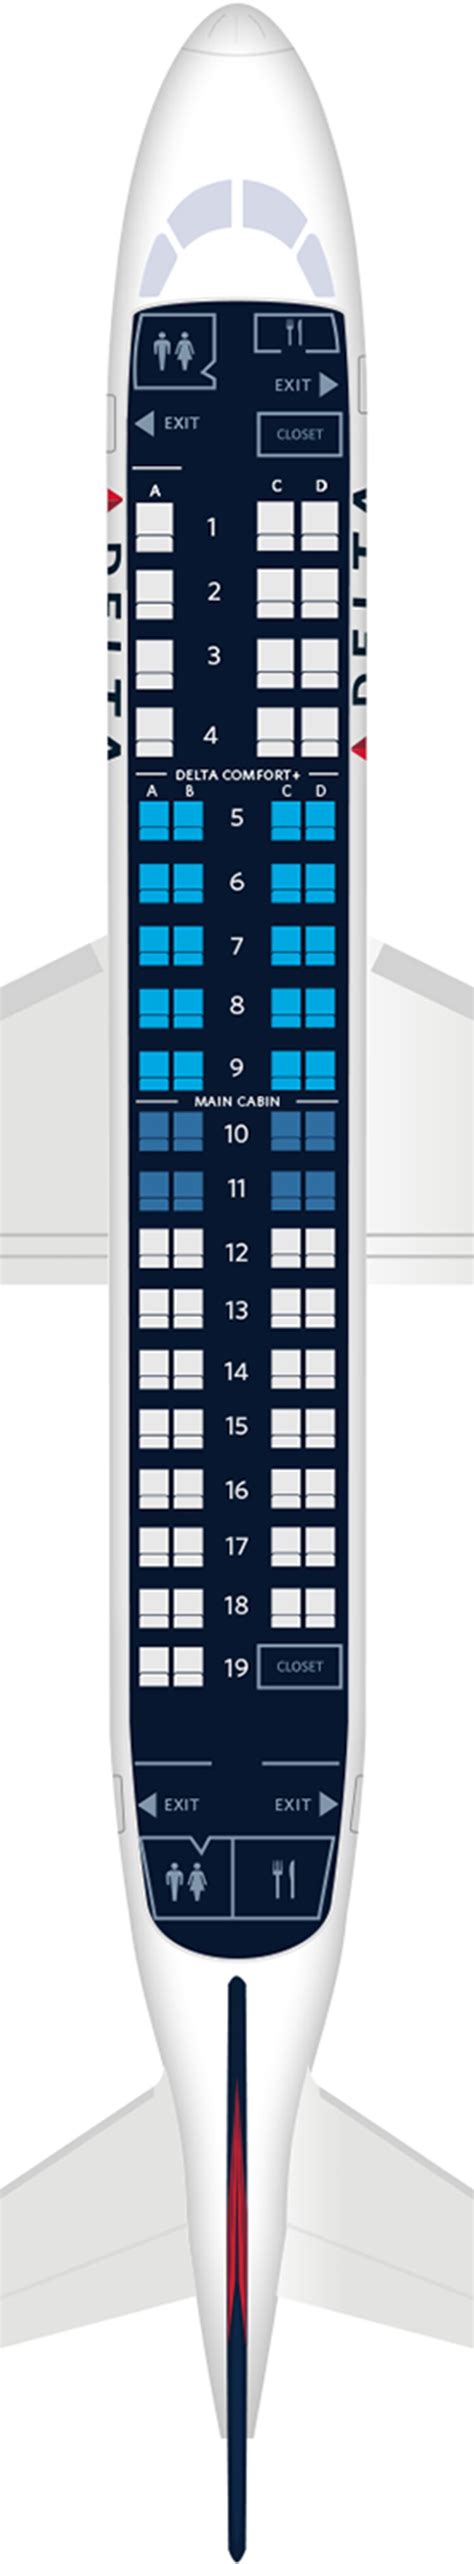 엠브라에르 ERJ 175 항공기 좌석 배치도 사양 및 편의시설 Delta Air Lines